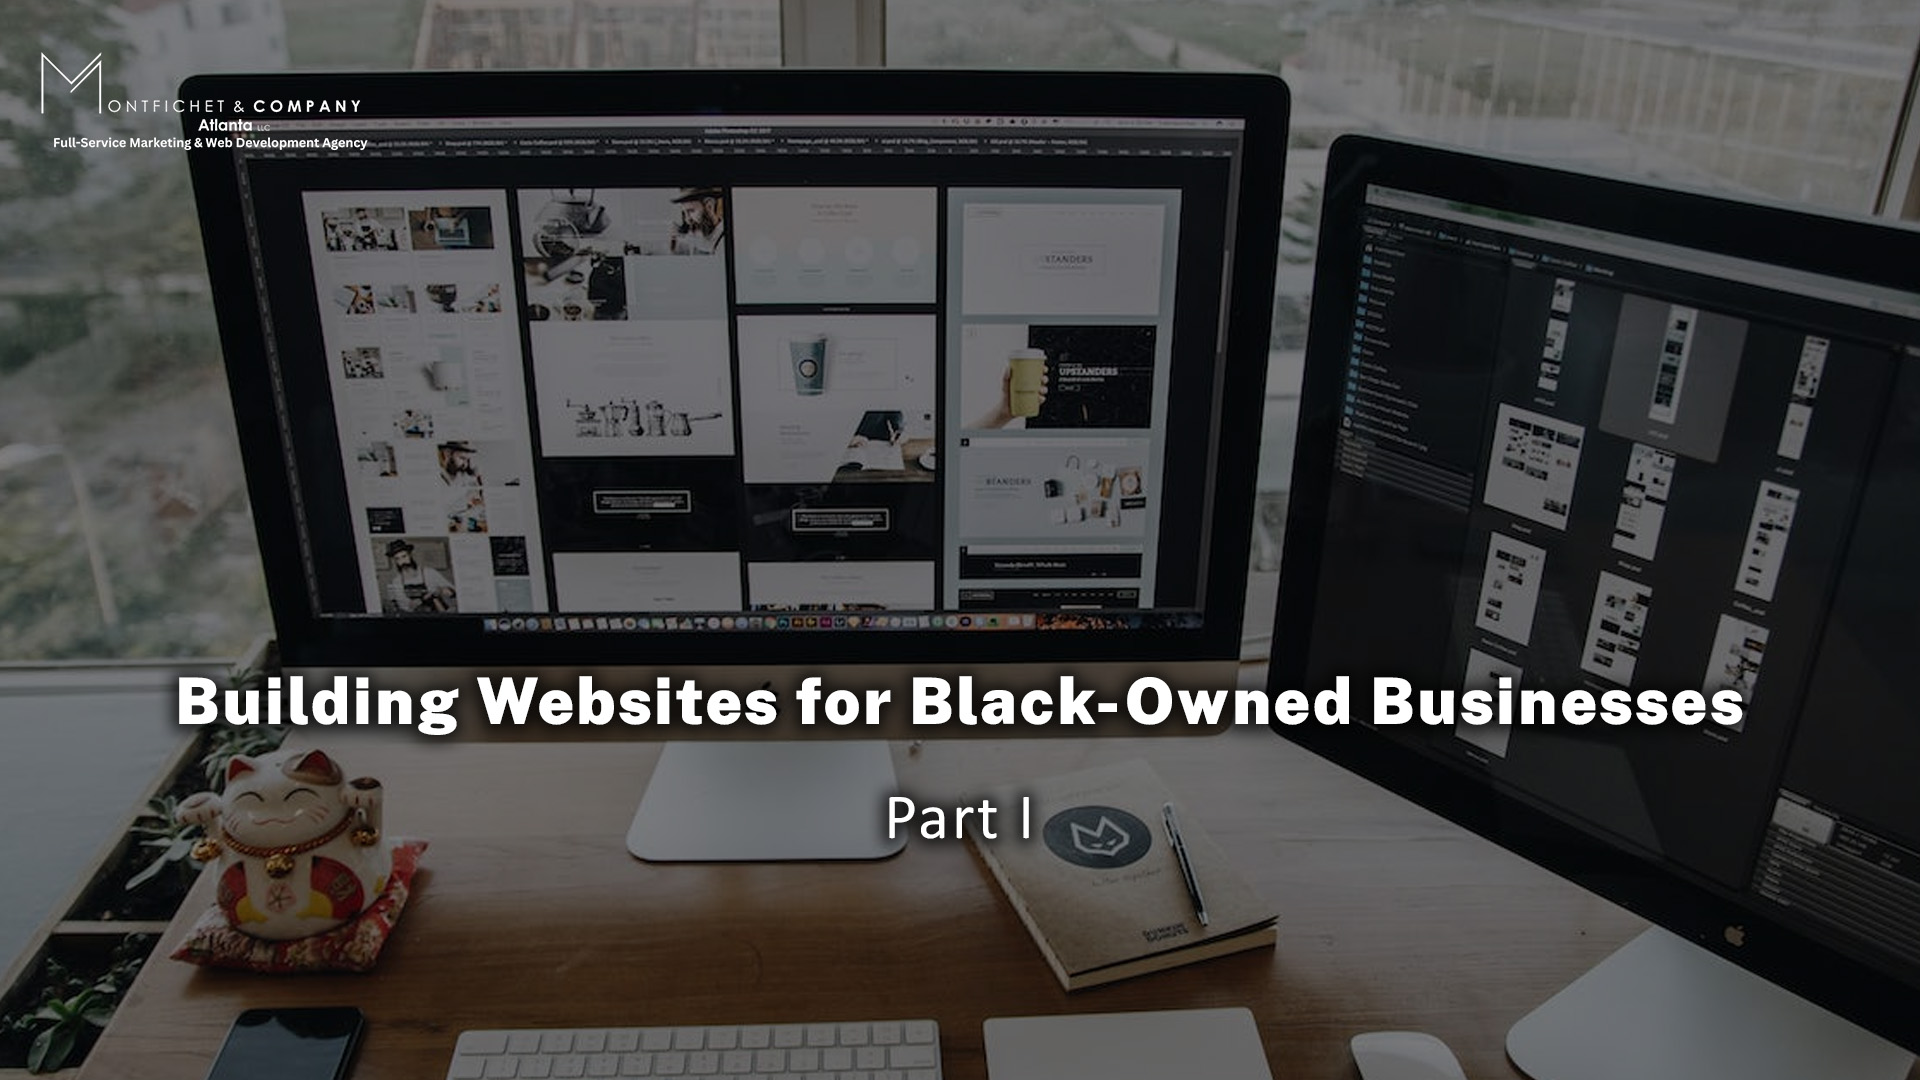 BUILDING WEBSITES FOR BLACK-OWNED BUSINESSES: PART I